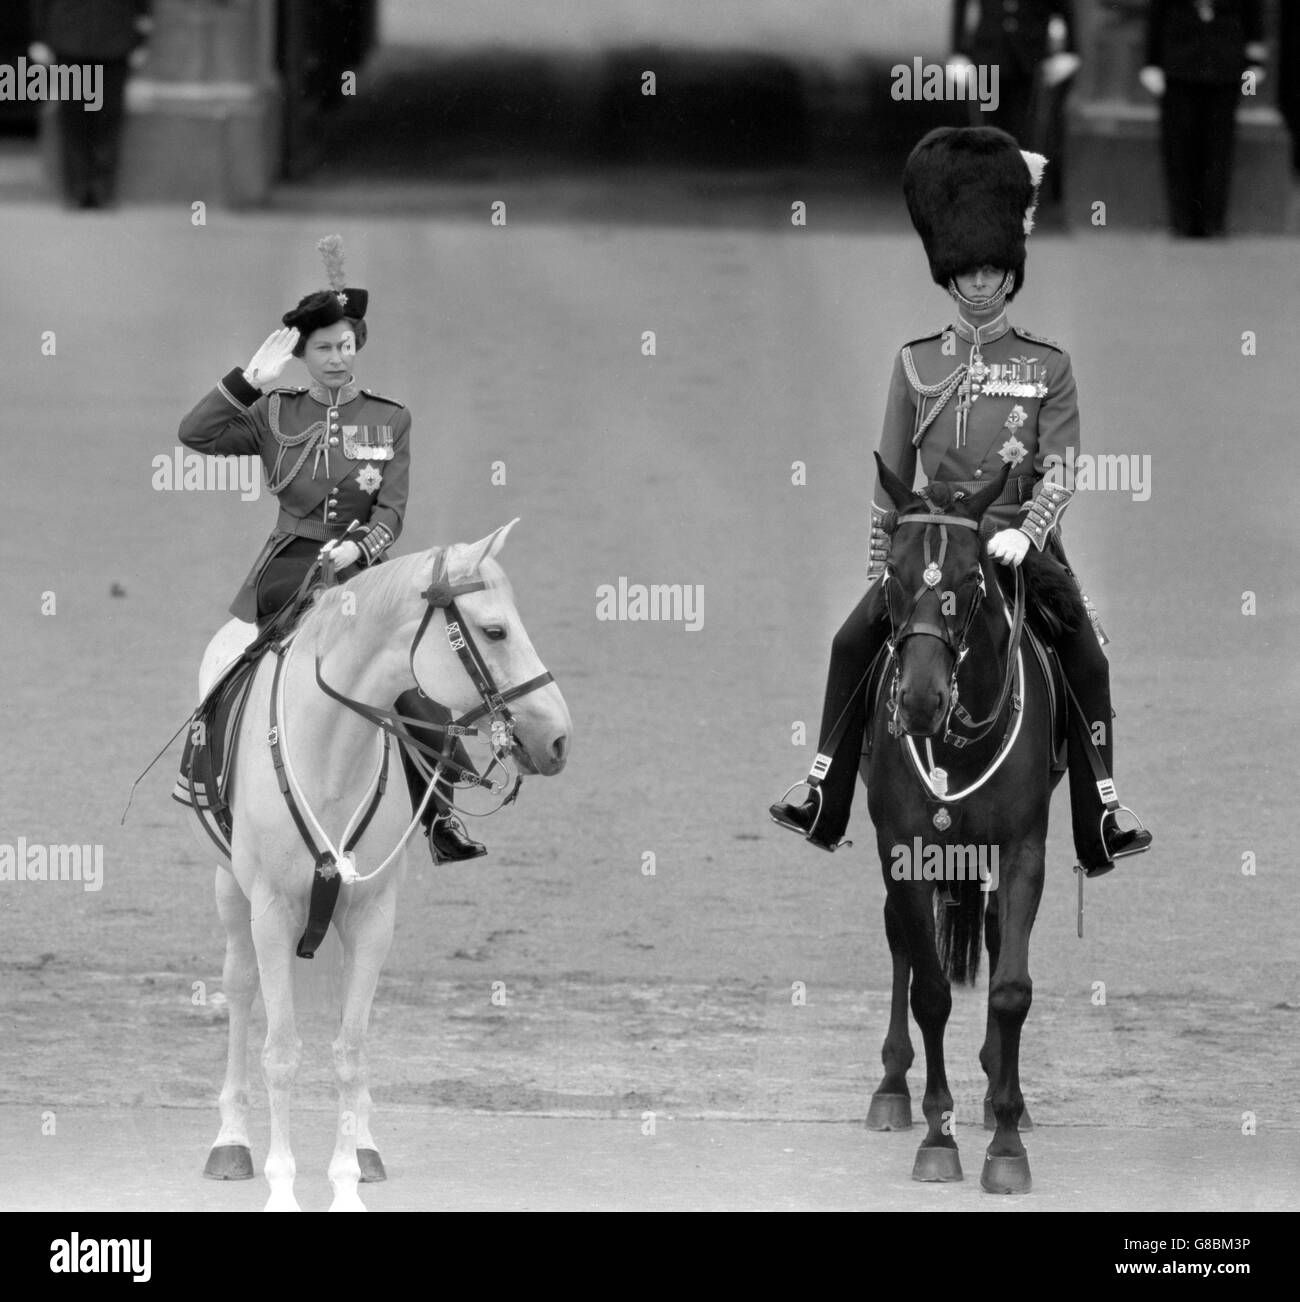 La reine Elizabeth II, avec le prince Philip, duc d'Édimbourg, saluant alors que les gardes défilent devant le palais de Buckingham après la cérémonie de Trooping de la couleur sur la parade des gardes à cheval.Les deux supports sont des chevaux de police métropolitaine.La Reine est sur le Docteur et le Duc est sur Neill. Banque D'Images